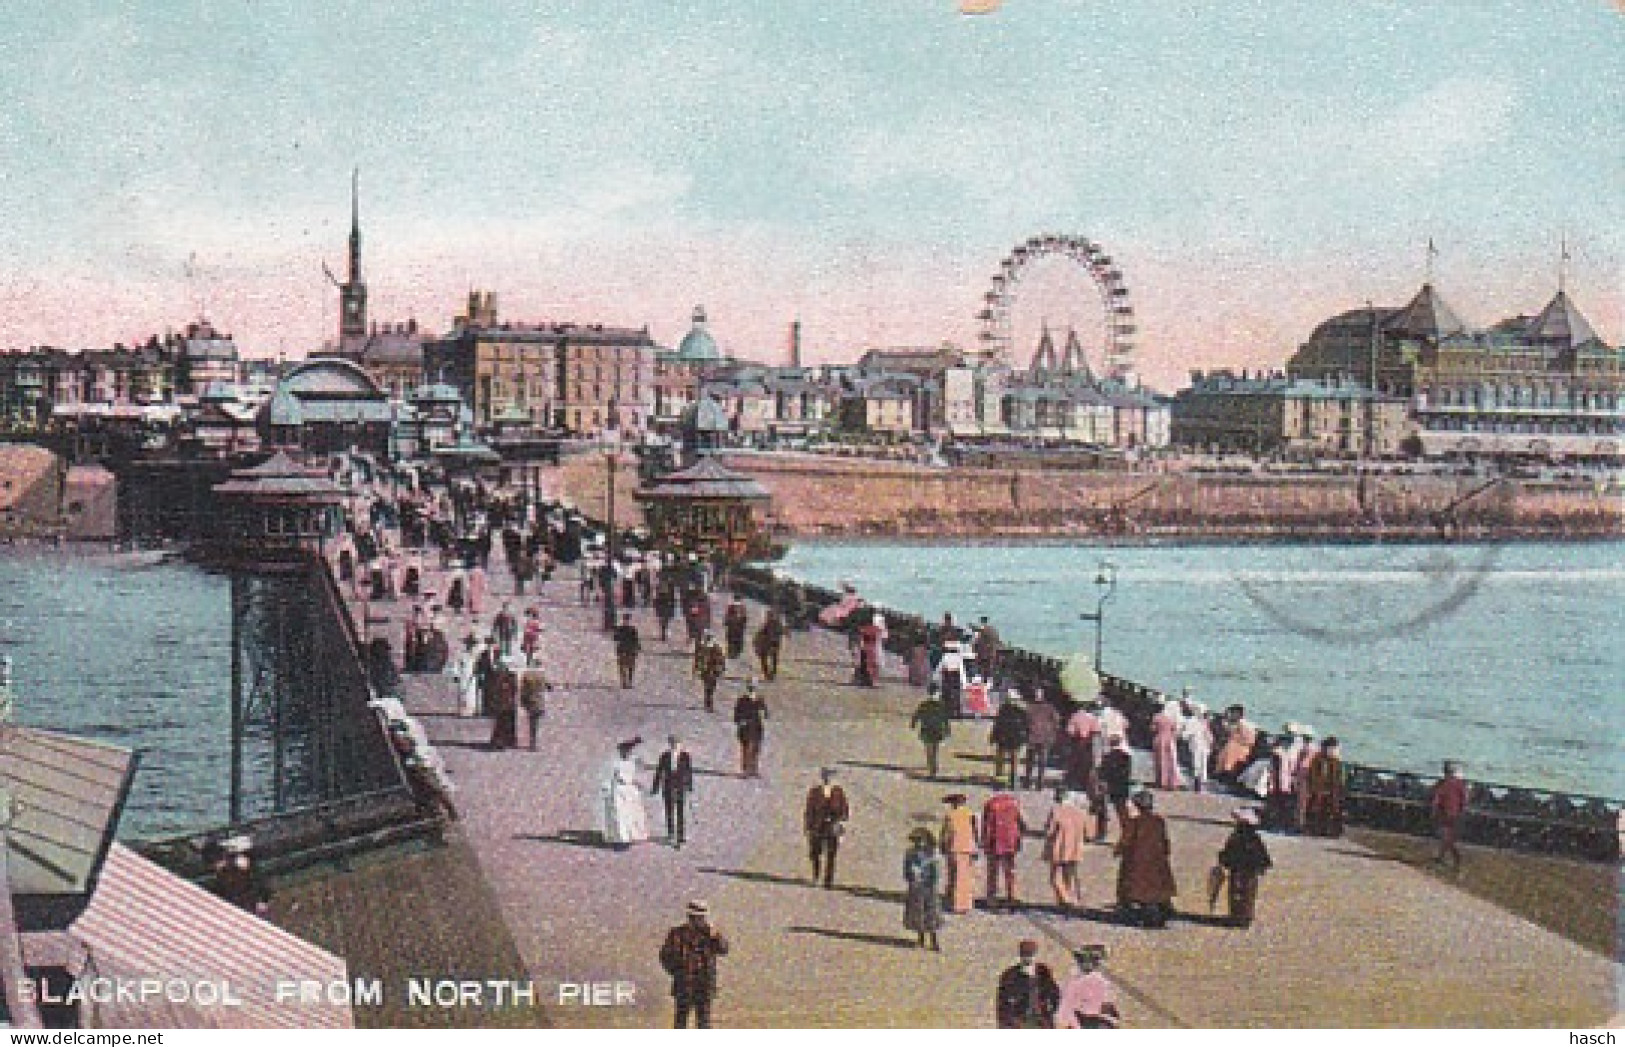 3834	138	Blackpool, From North Pier (postmark 1907) - Blackpool